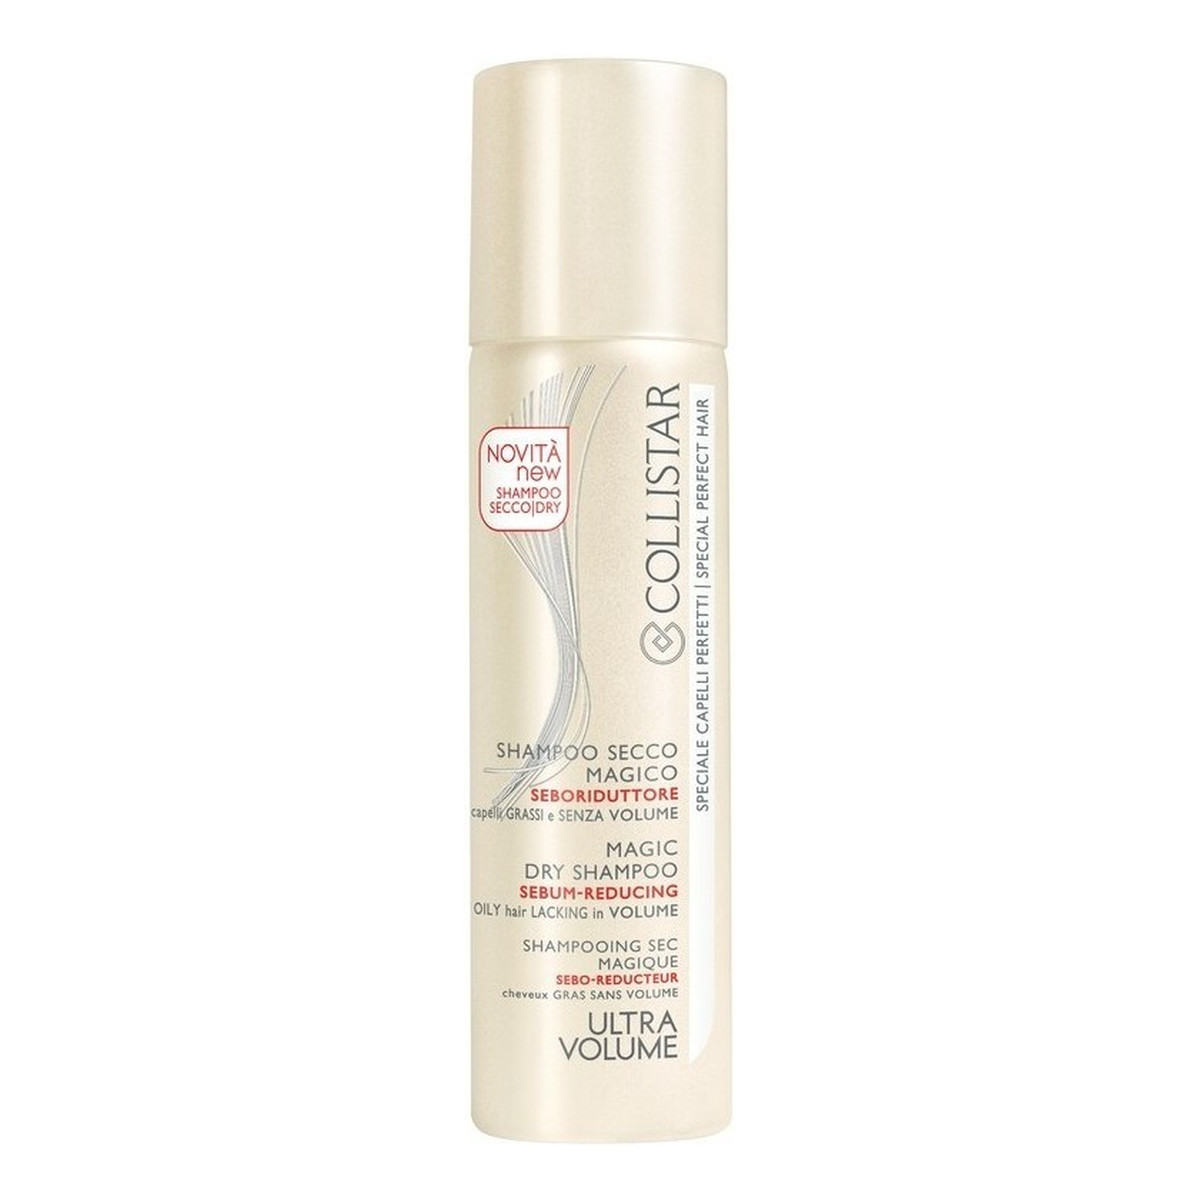 Collistar Magic Dry Shampoo Sebum-Reducing Ultra Volume suchy szampon zmniejszający sebum do włosów 150ml